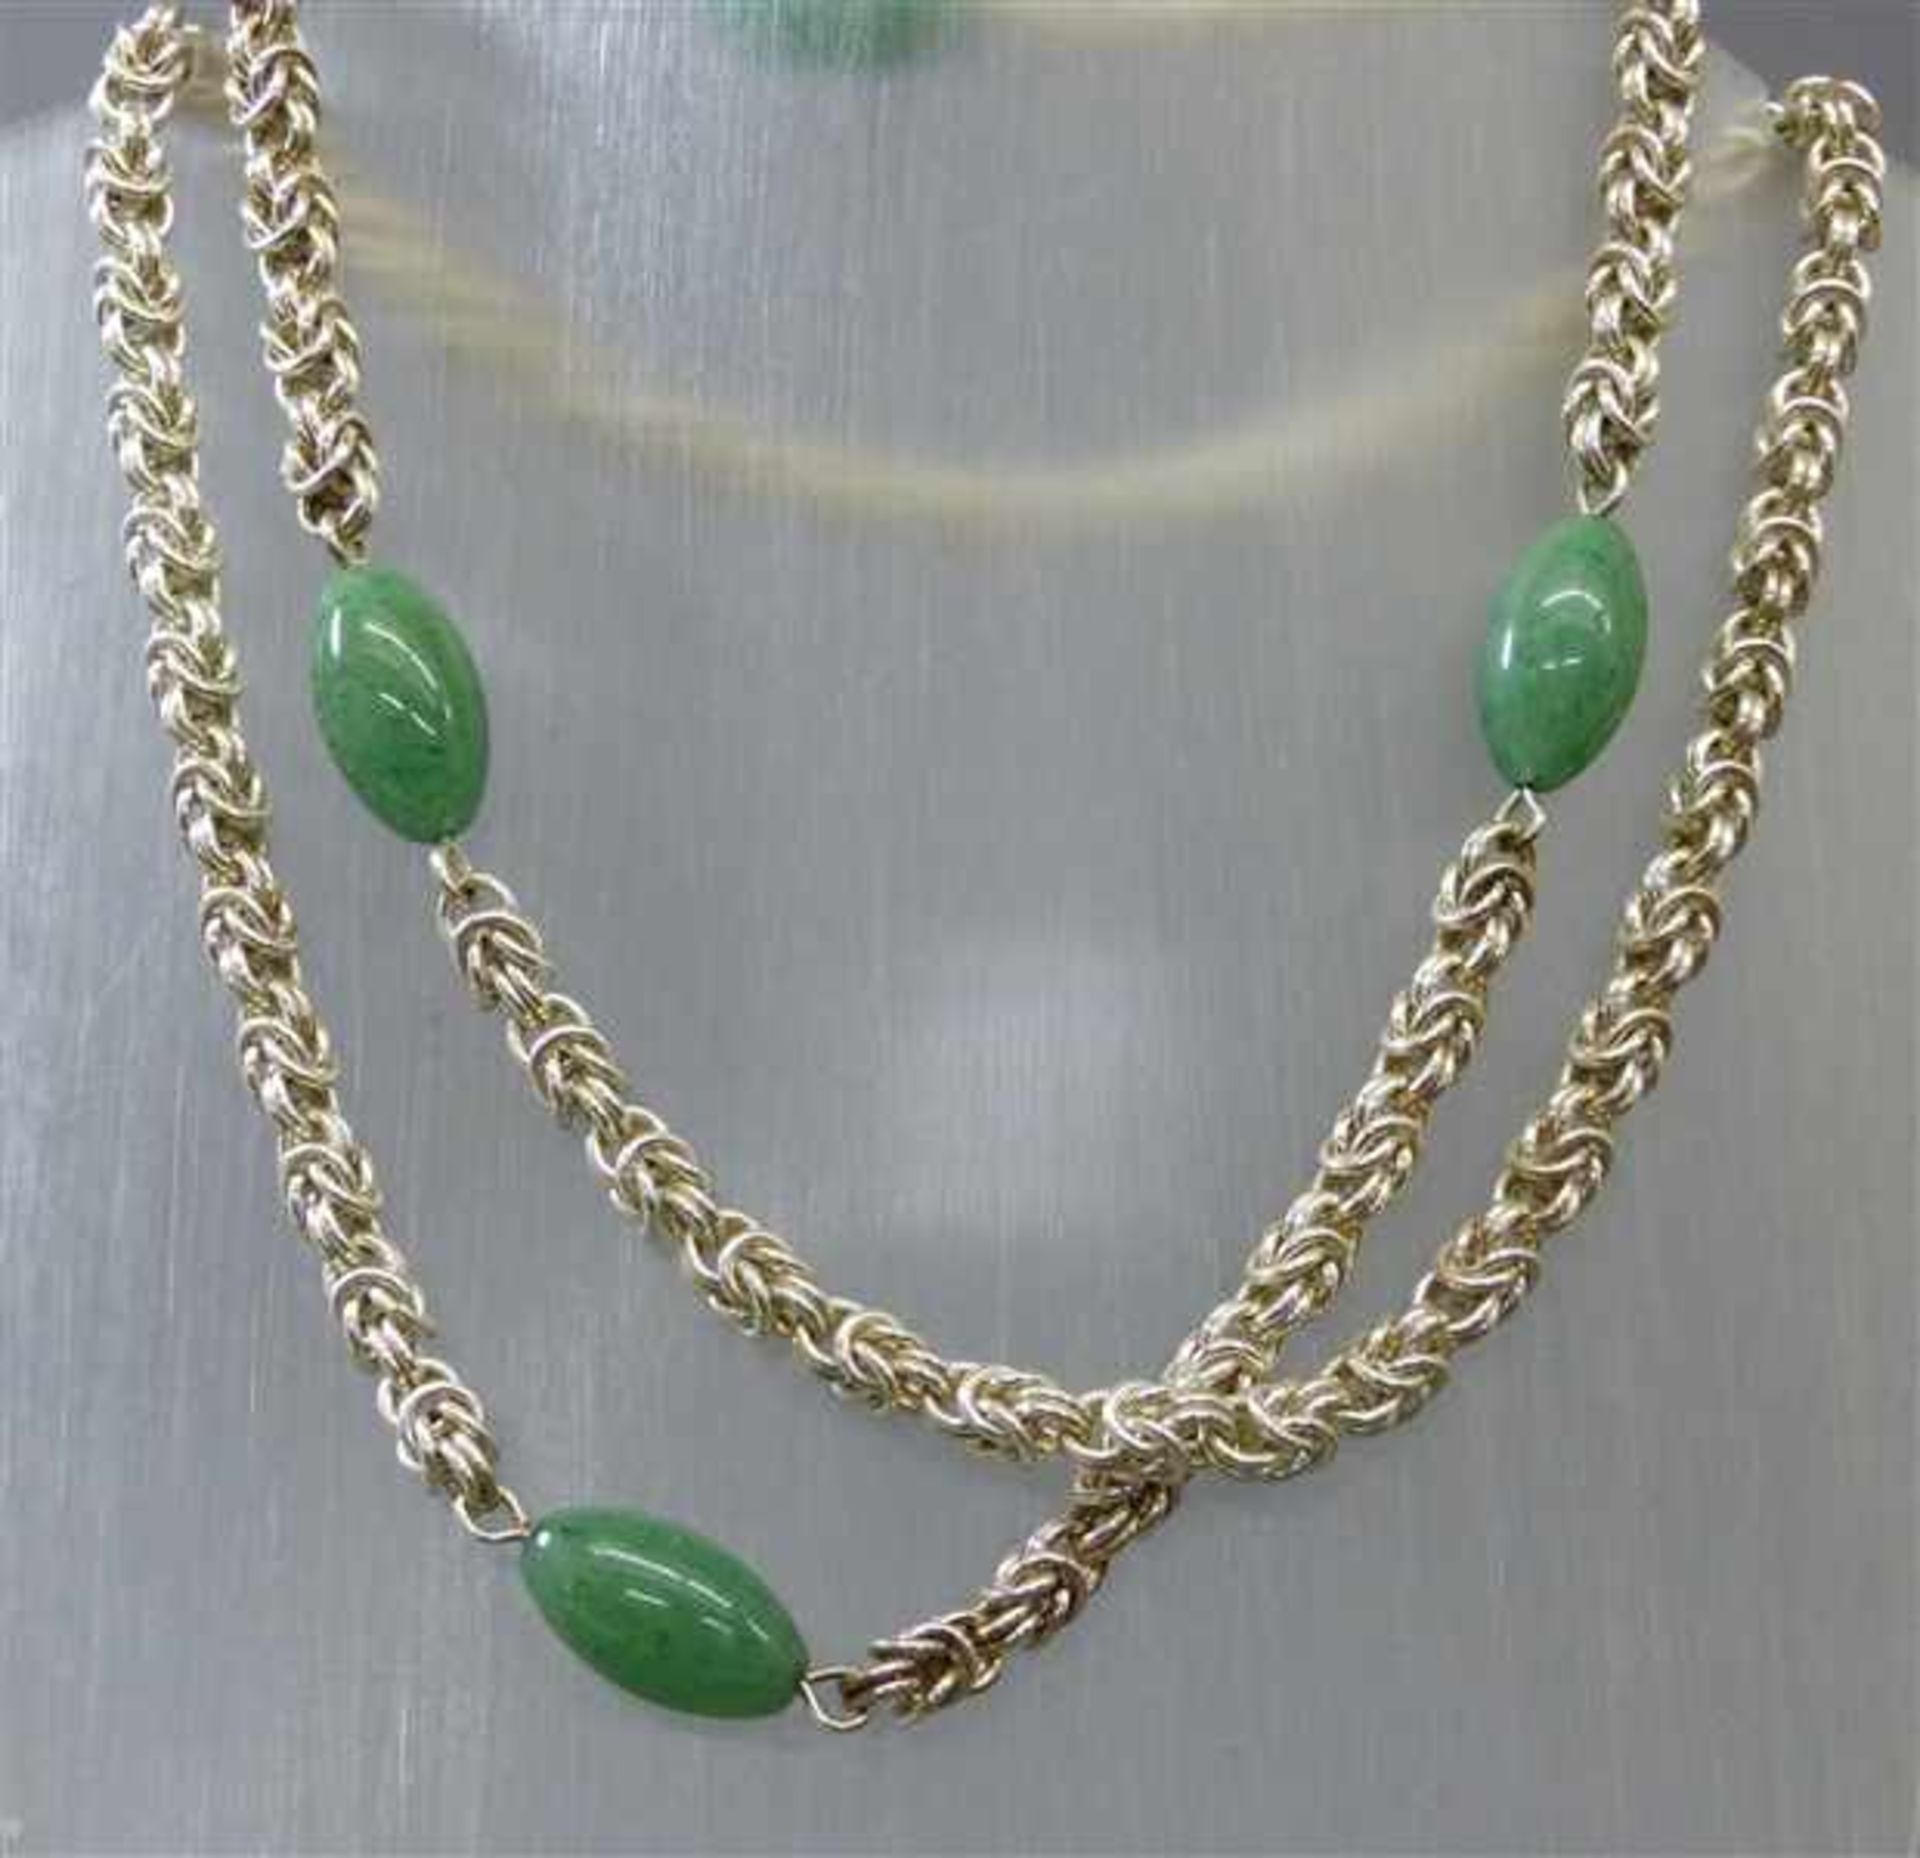 HalsketteSilber, Kordelform, 4 Jadezwischenstücke, endlos, ca 100g, l ca 80 cm,